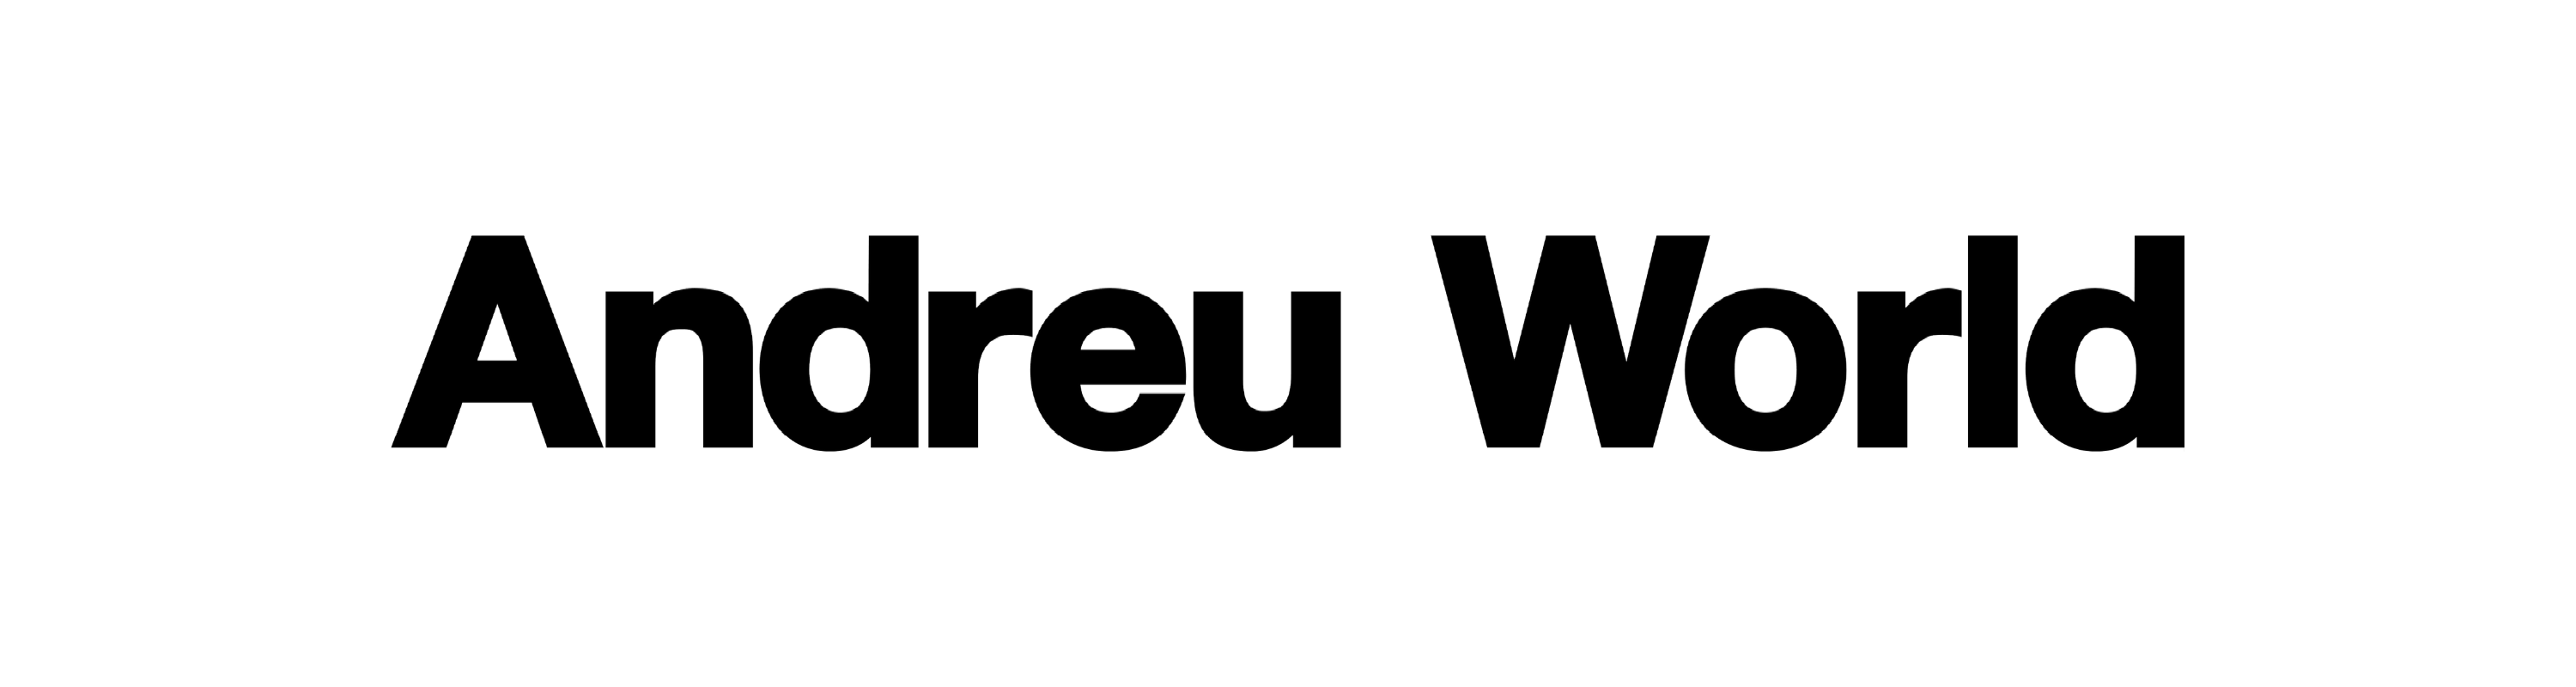 XTRA _ Andreu World Logo